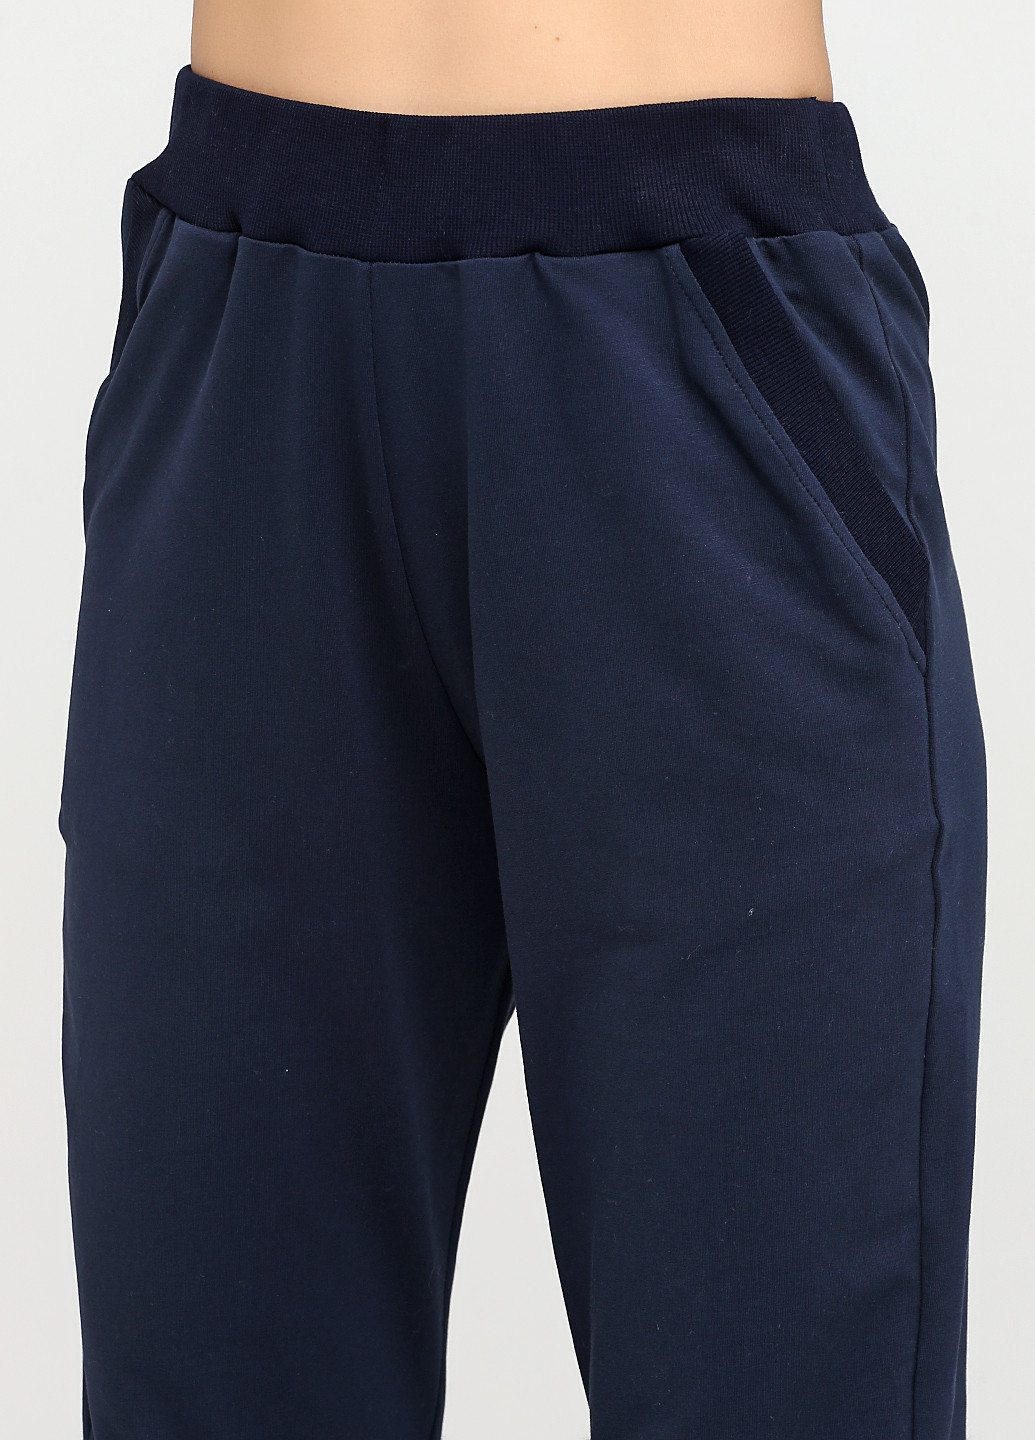 Темно-синие спортивные демисезонные джоггеры брюки Only Women